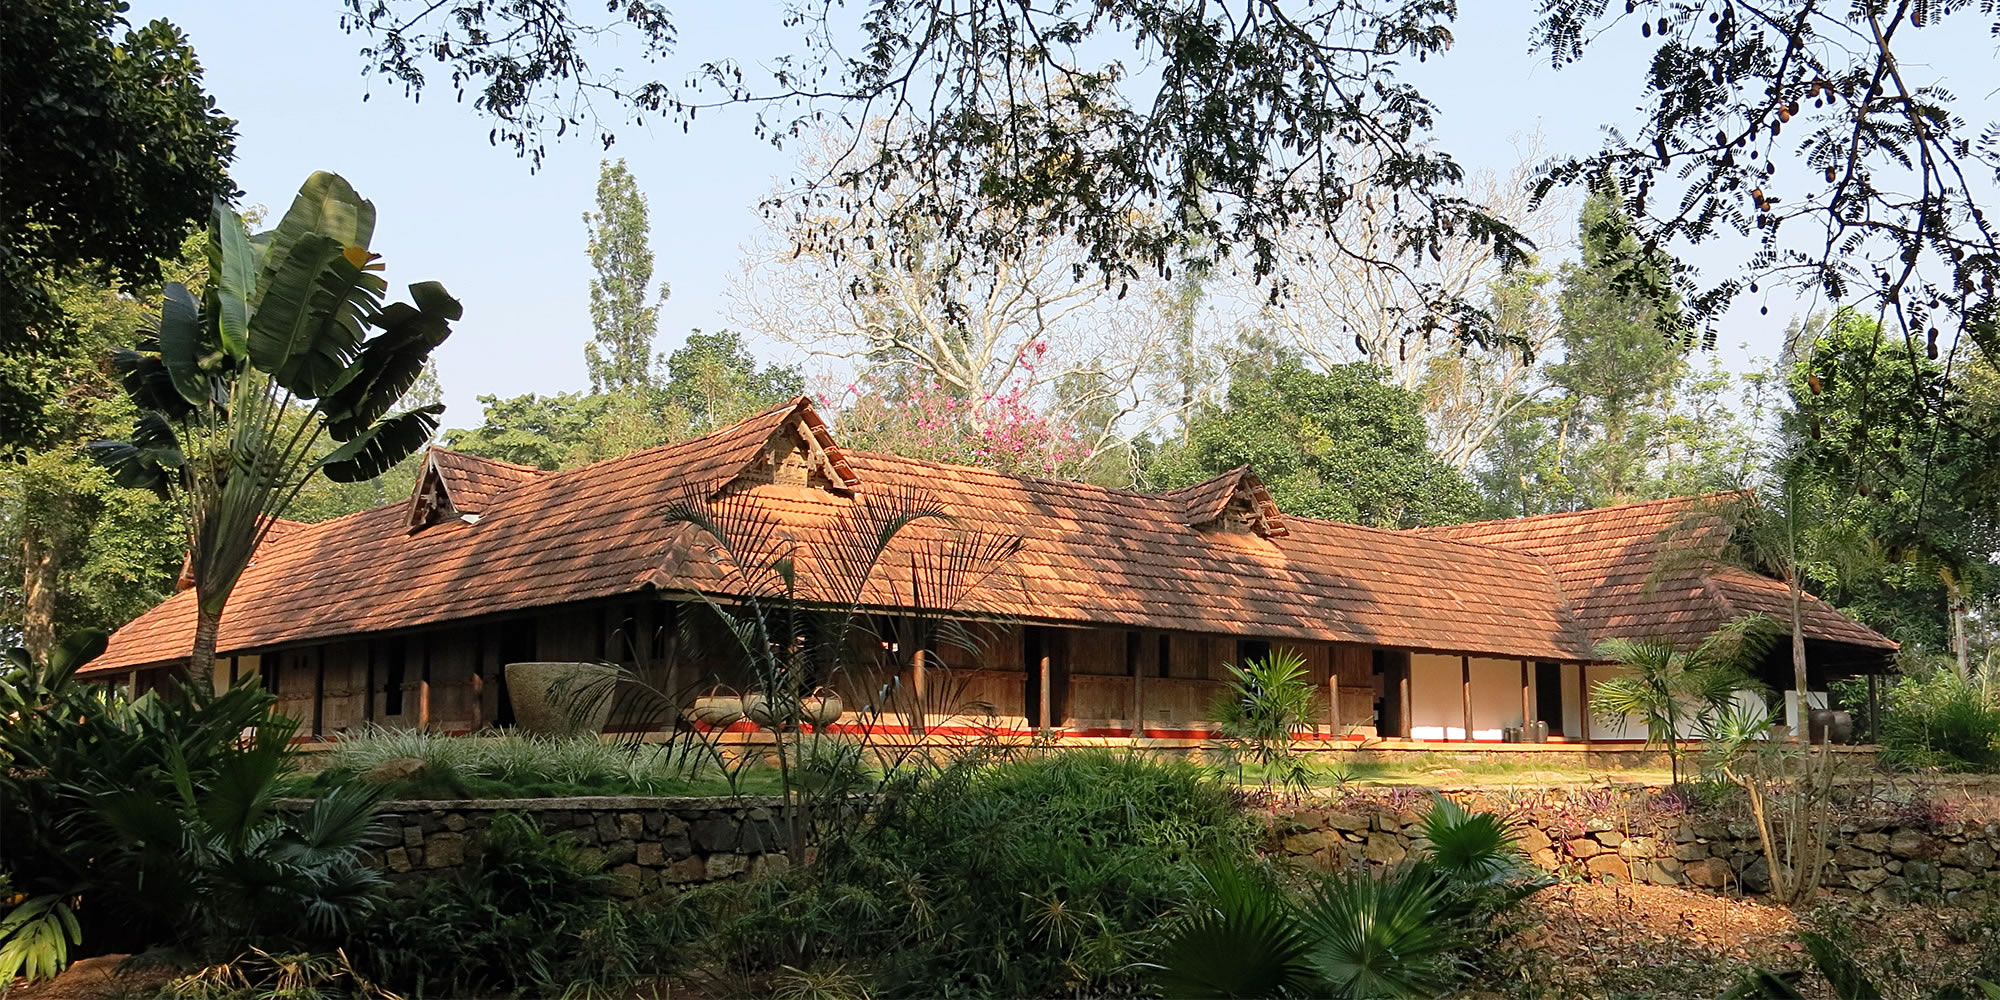 Rajakkad, near Dindigul, Tamil Nadu